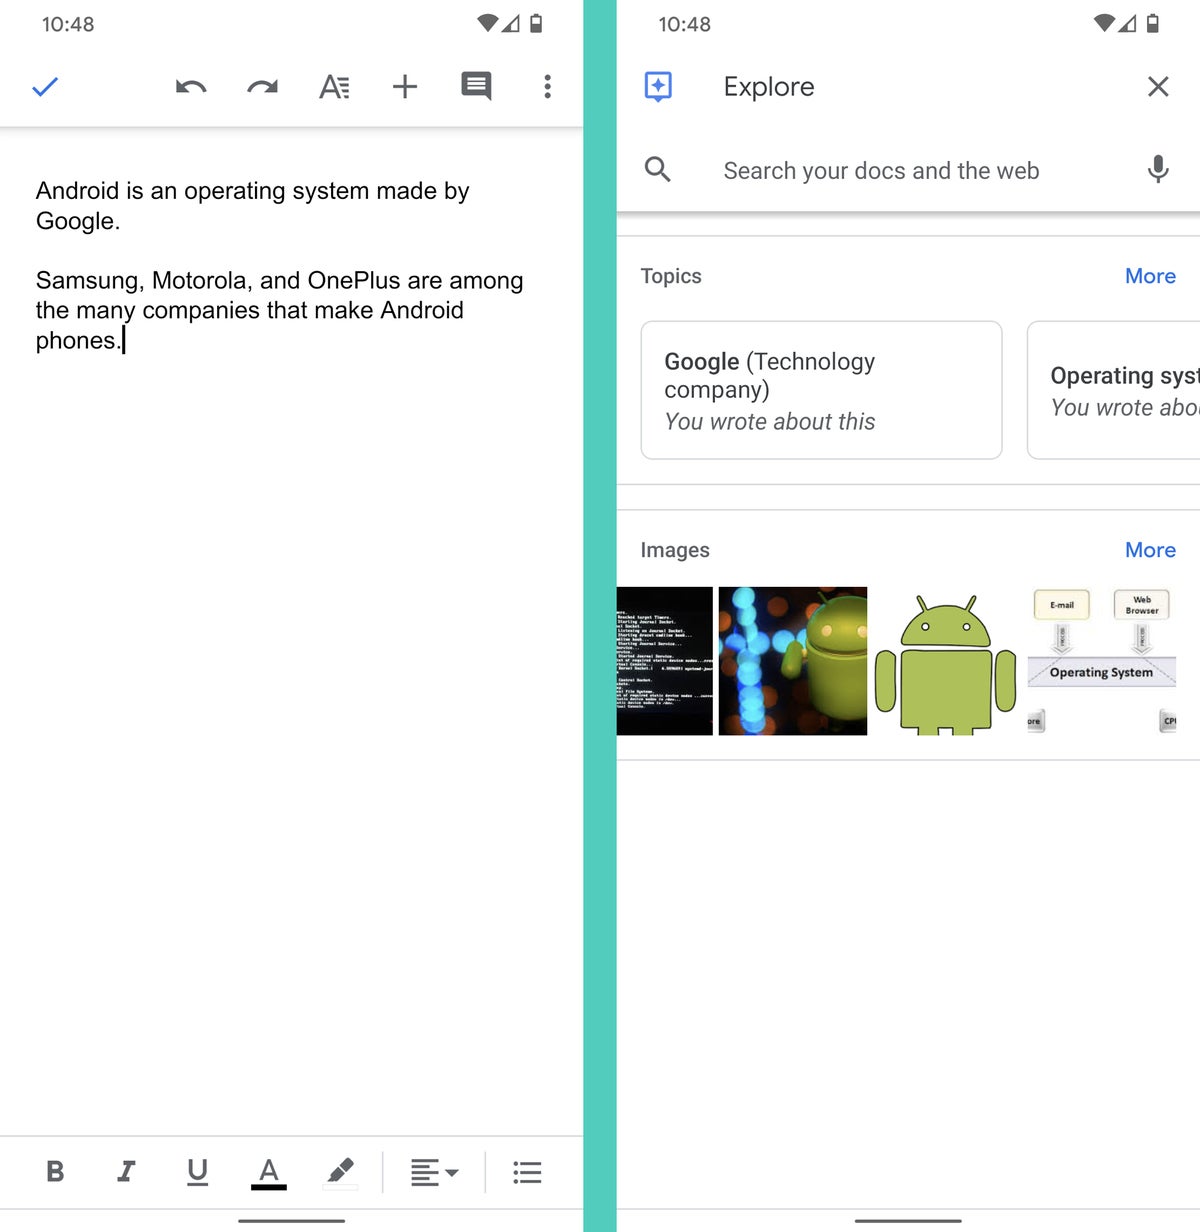 Google Docs Android: Explore